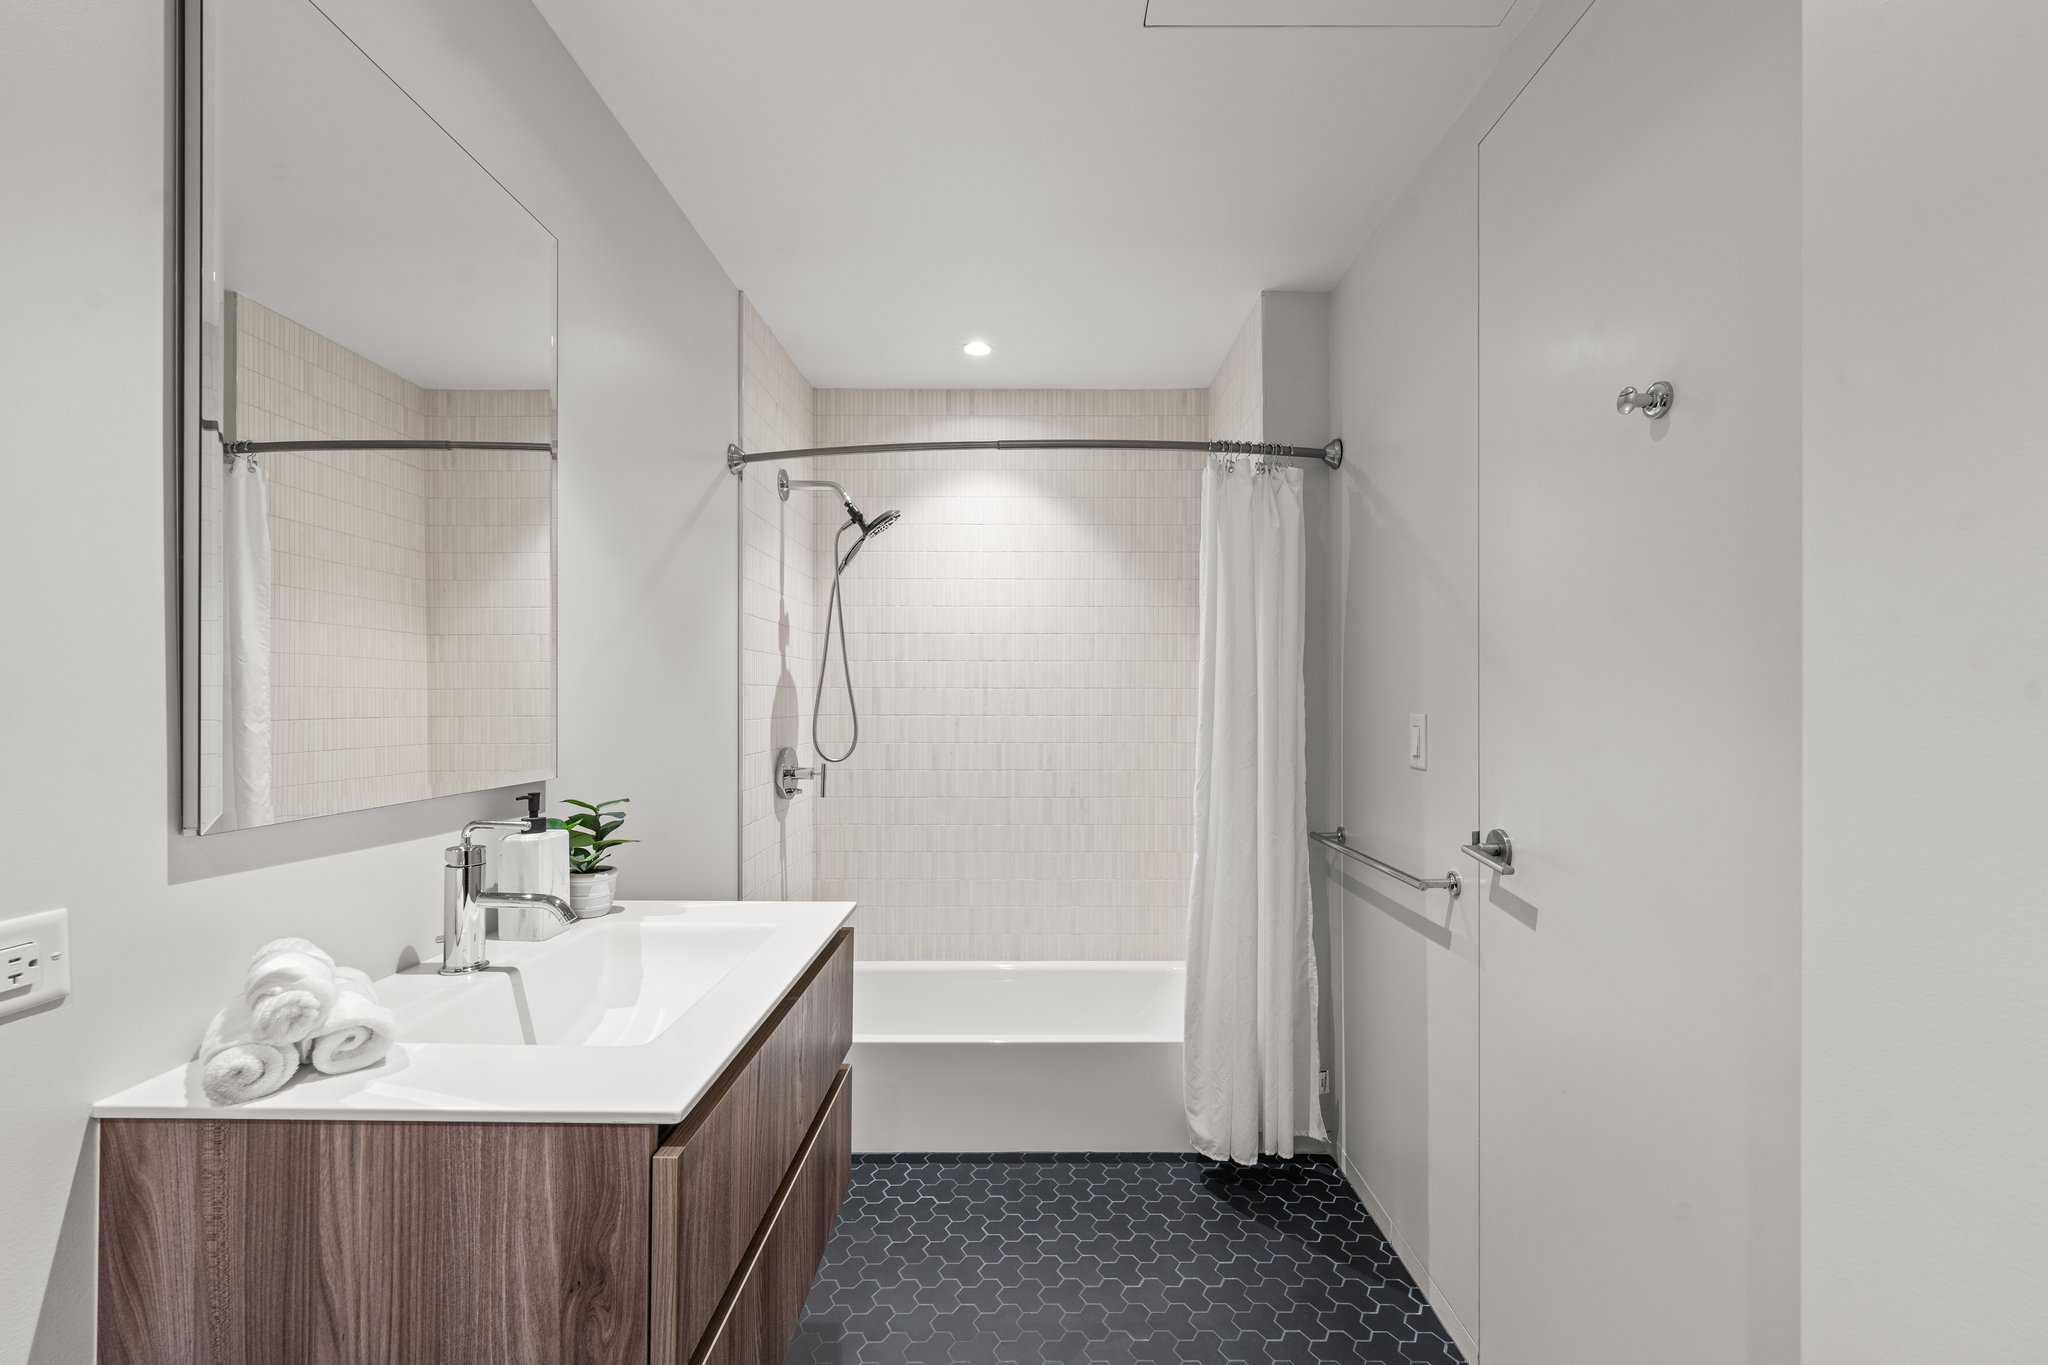 Bathroom 2  Upgraded Tile Shower